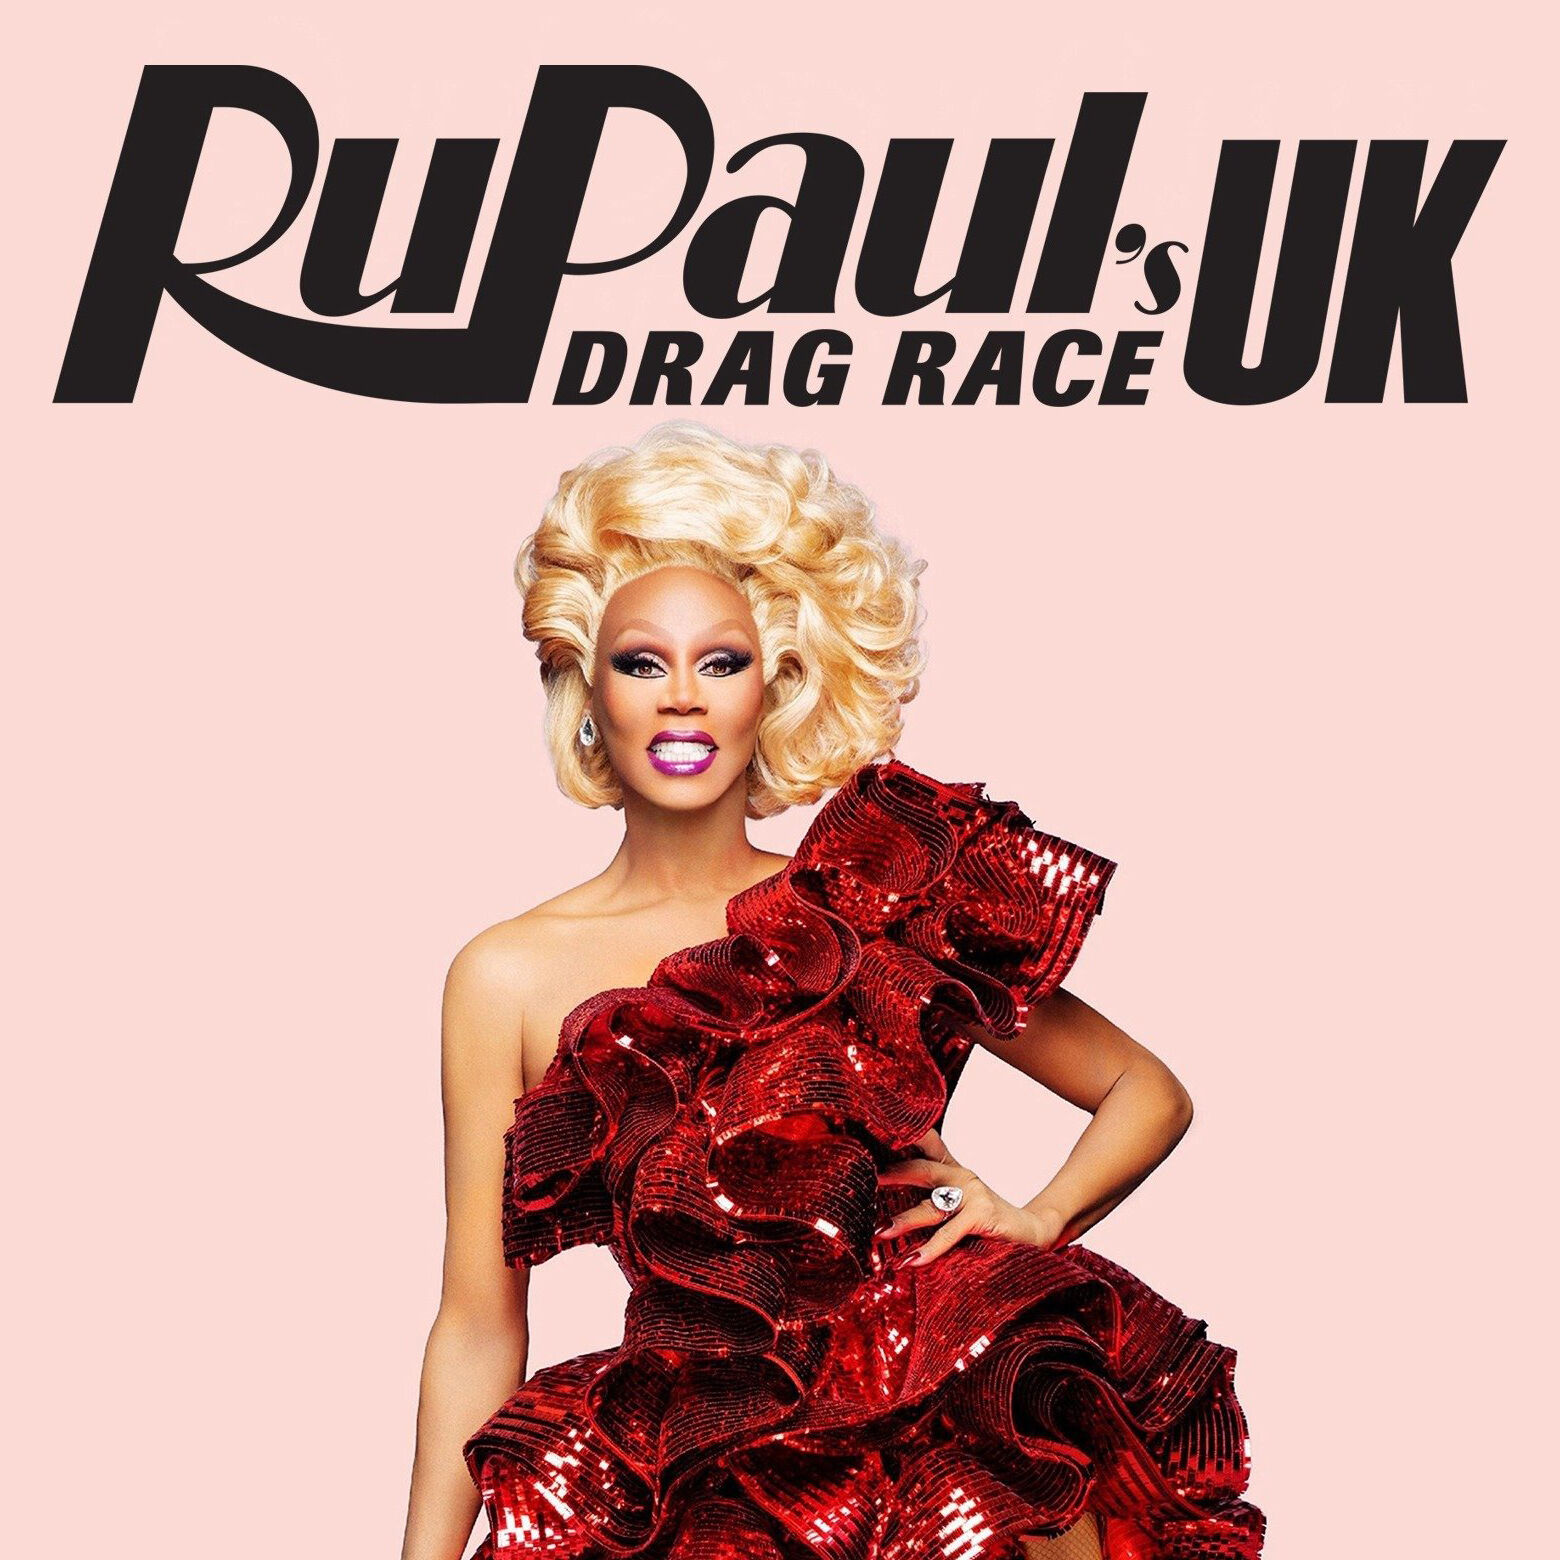 drag race uk release